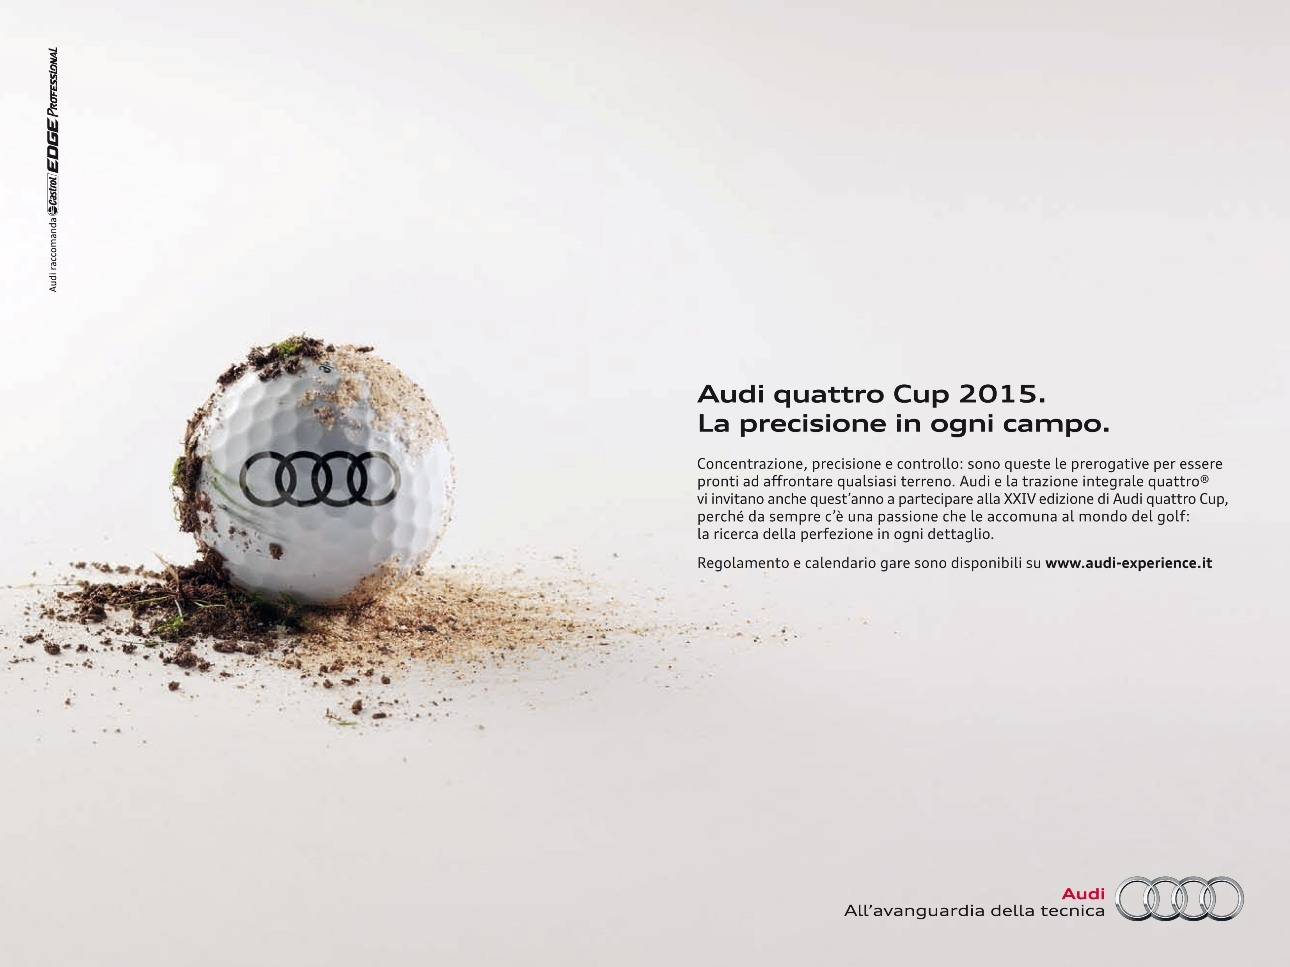 Audi quattro Cup 2015: prima gara il 29 marzo